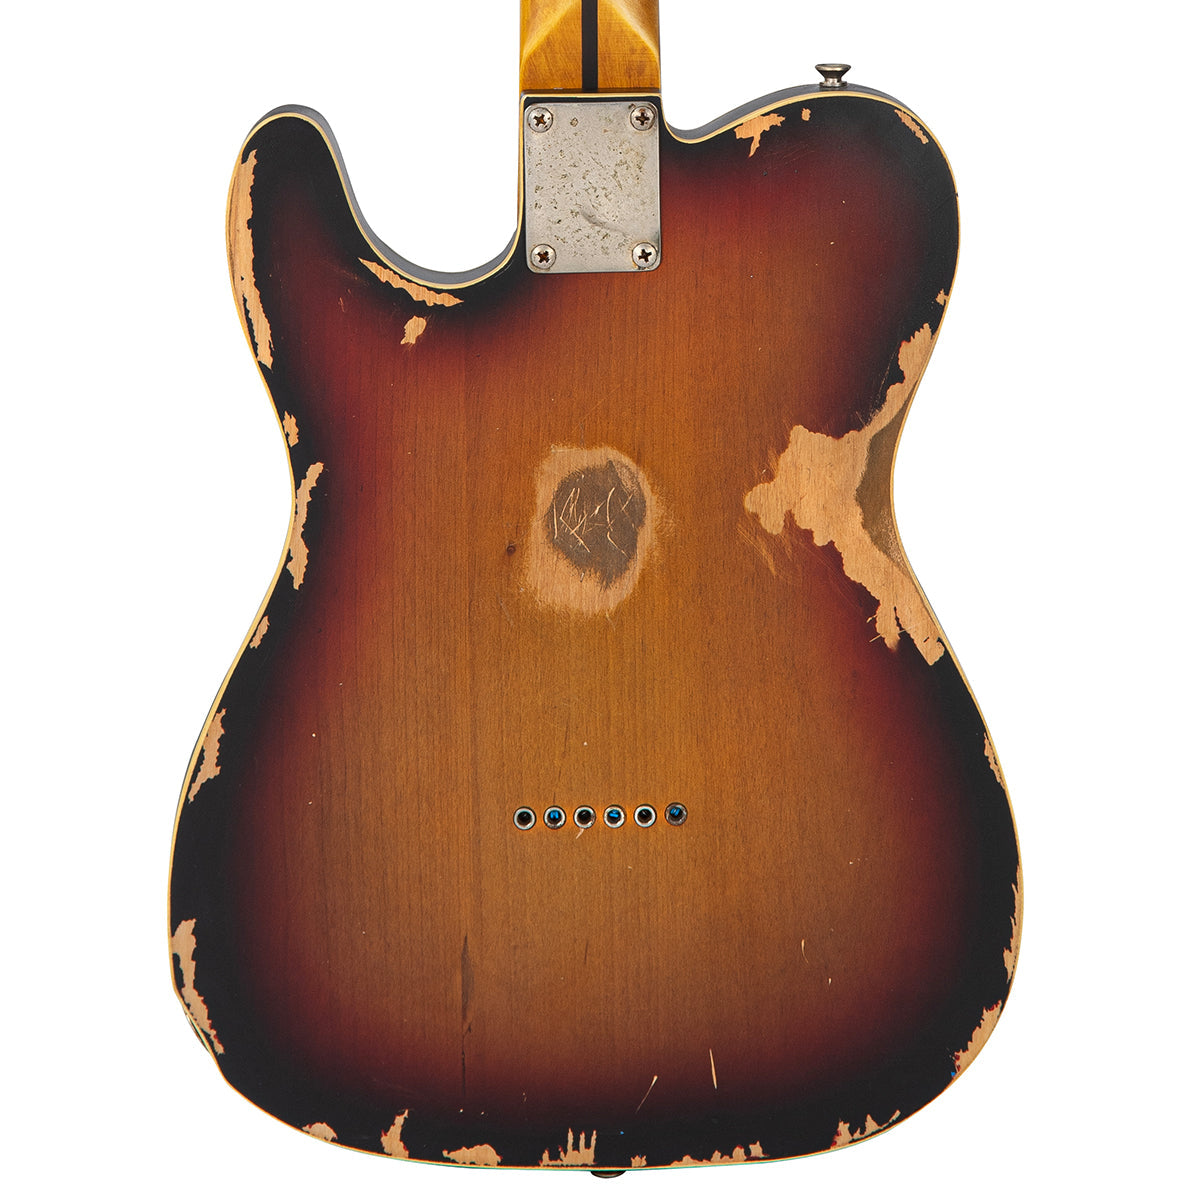 Vintage V59 ProShop LTD ~ Distressed Tobacco Sunburst (3 of 3), Electric Guitars for sale at Richards Guitars.